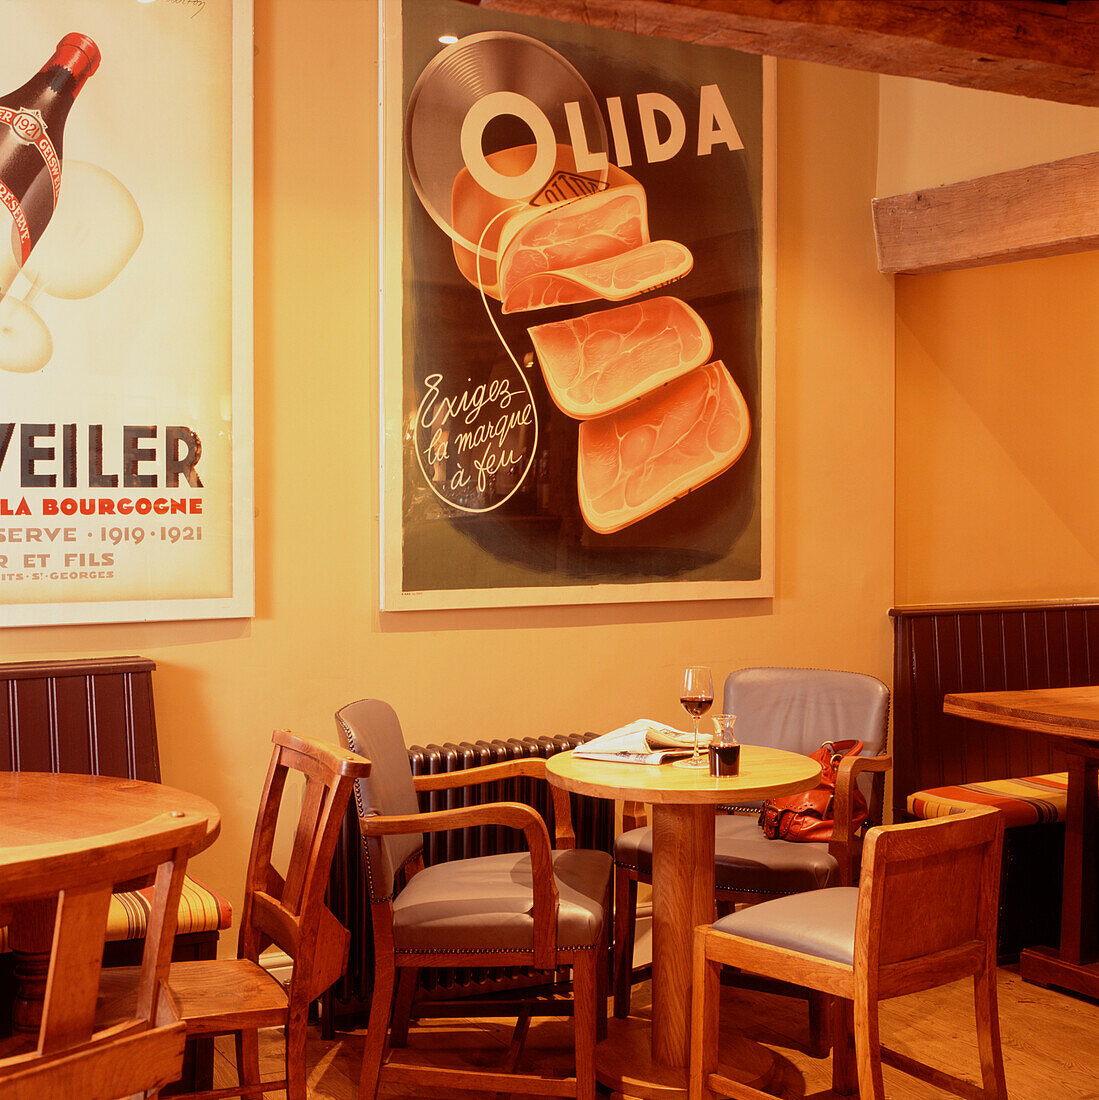 Cafe-Bar mit Tischen und Stühlen und großen Grafikpostern an der Wand